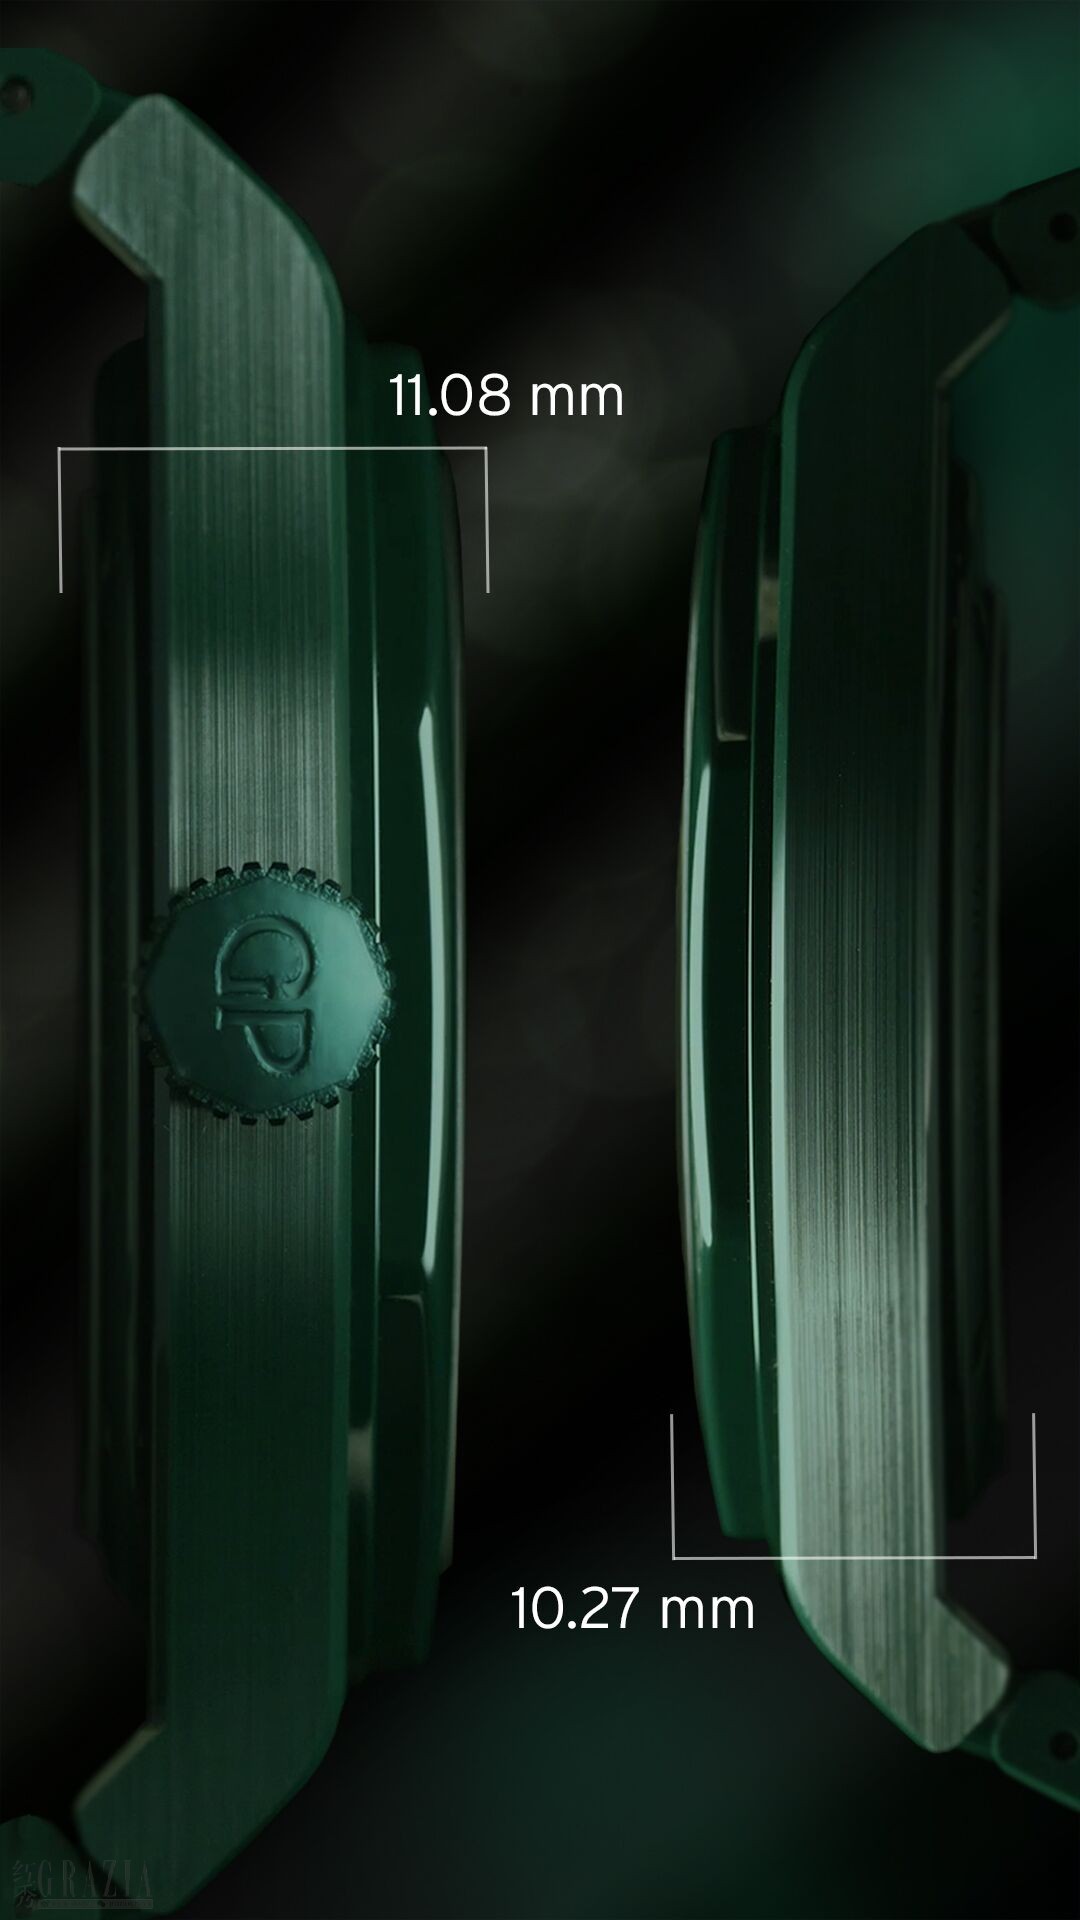 桂冠系列绿色陶瓷腕表阿斯顿·马丁限量款.jpg